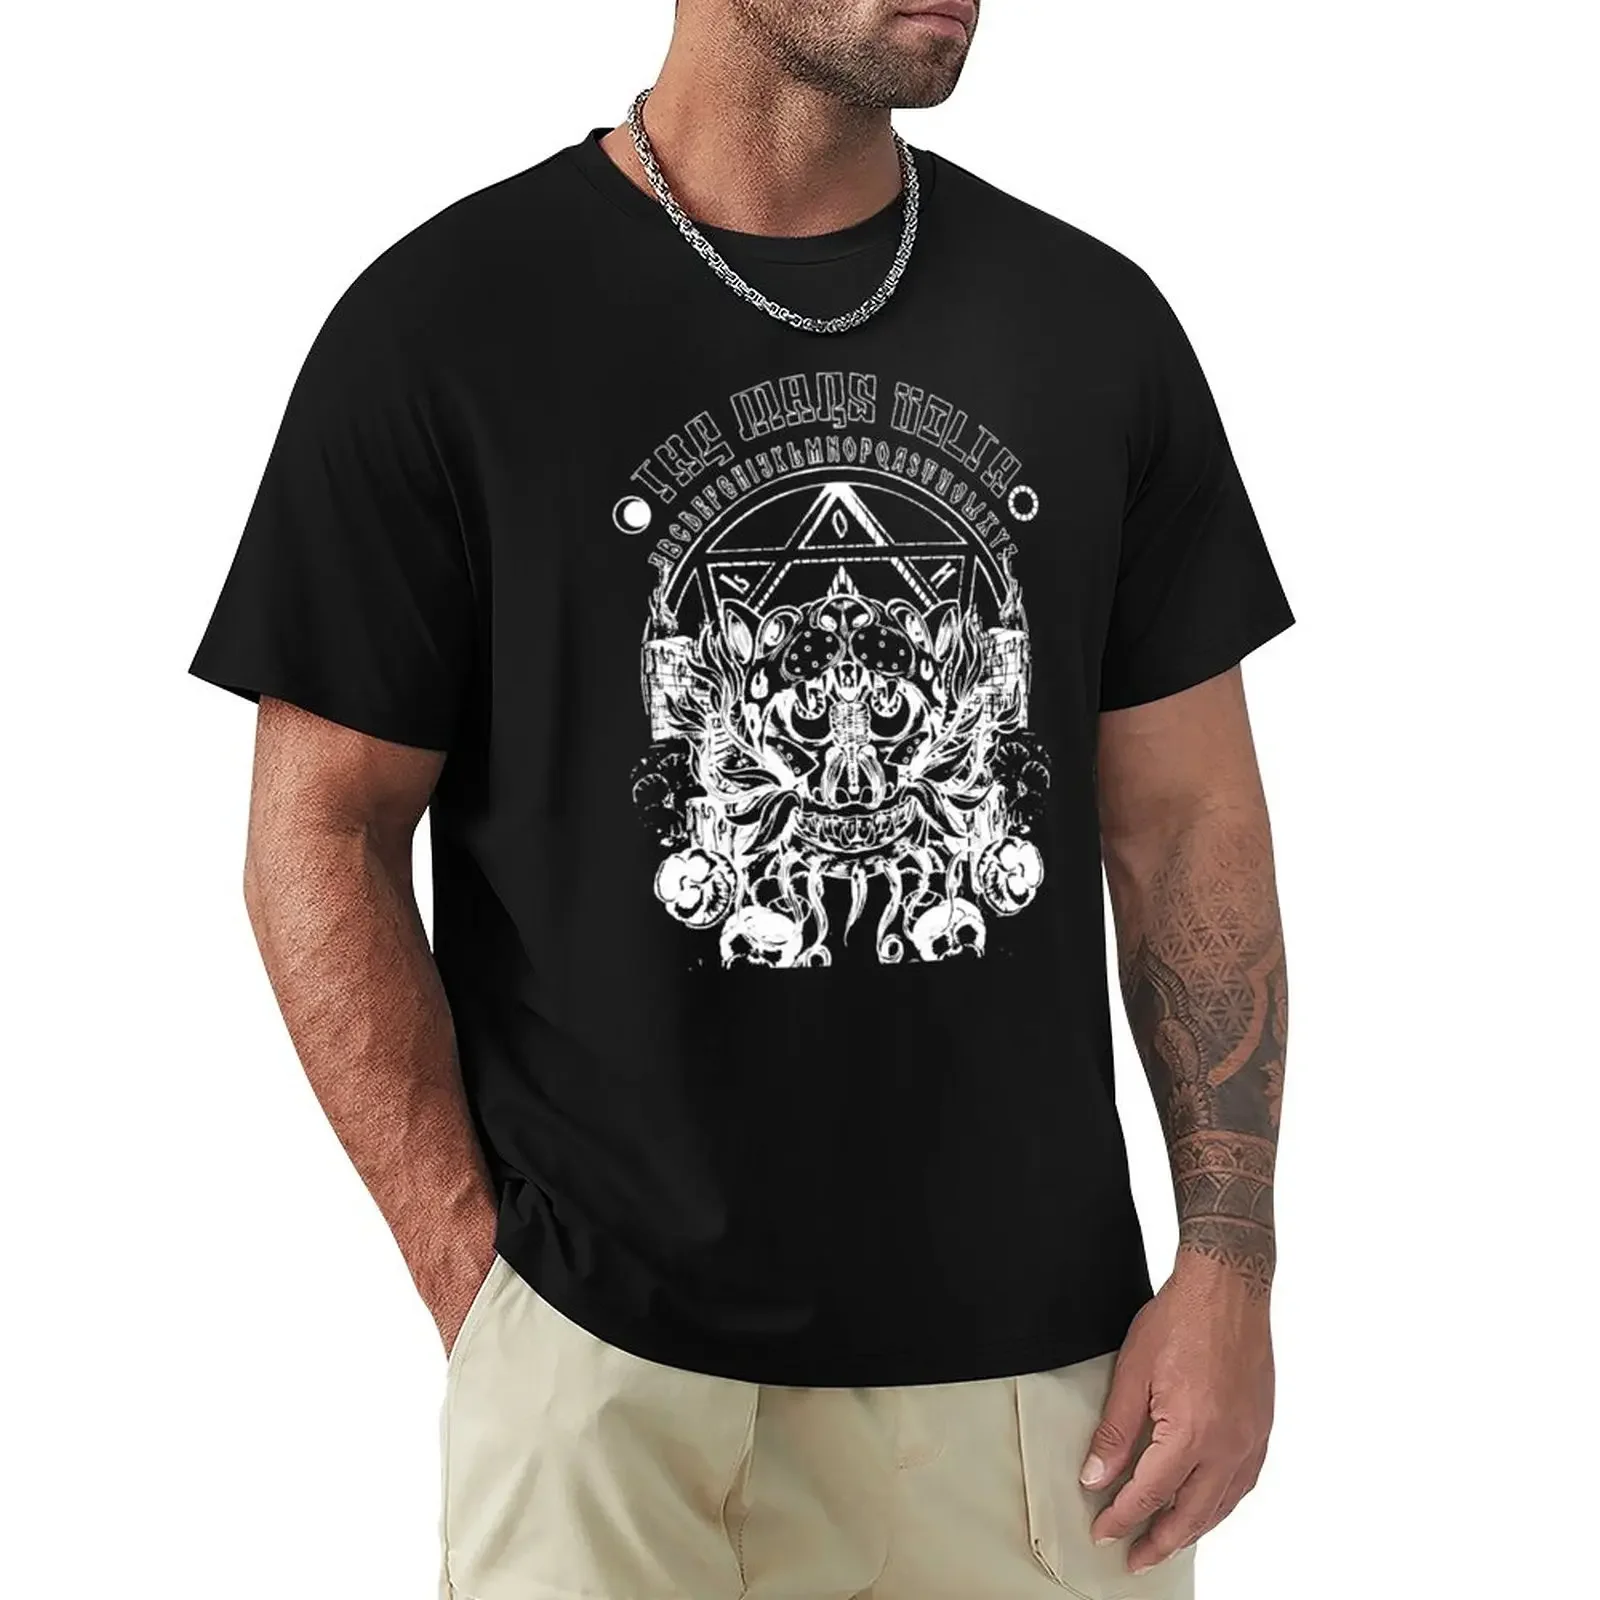 

La Mars Volta T-Shirt boys whites oversizeds sweat customs plain t shirts men